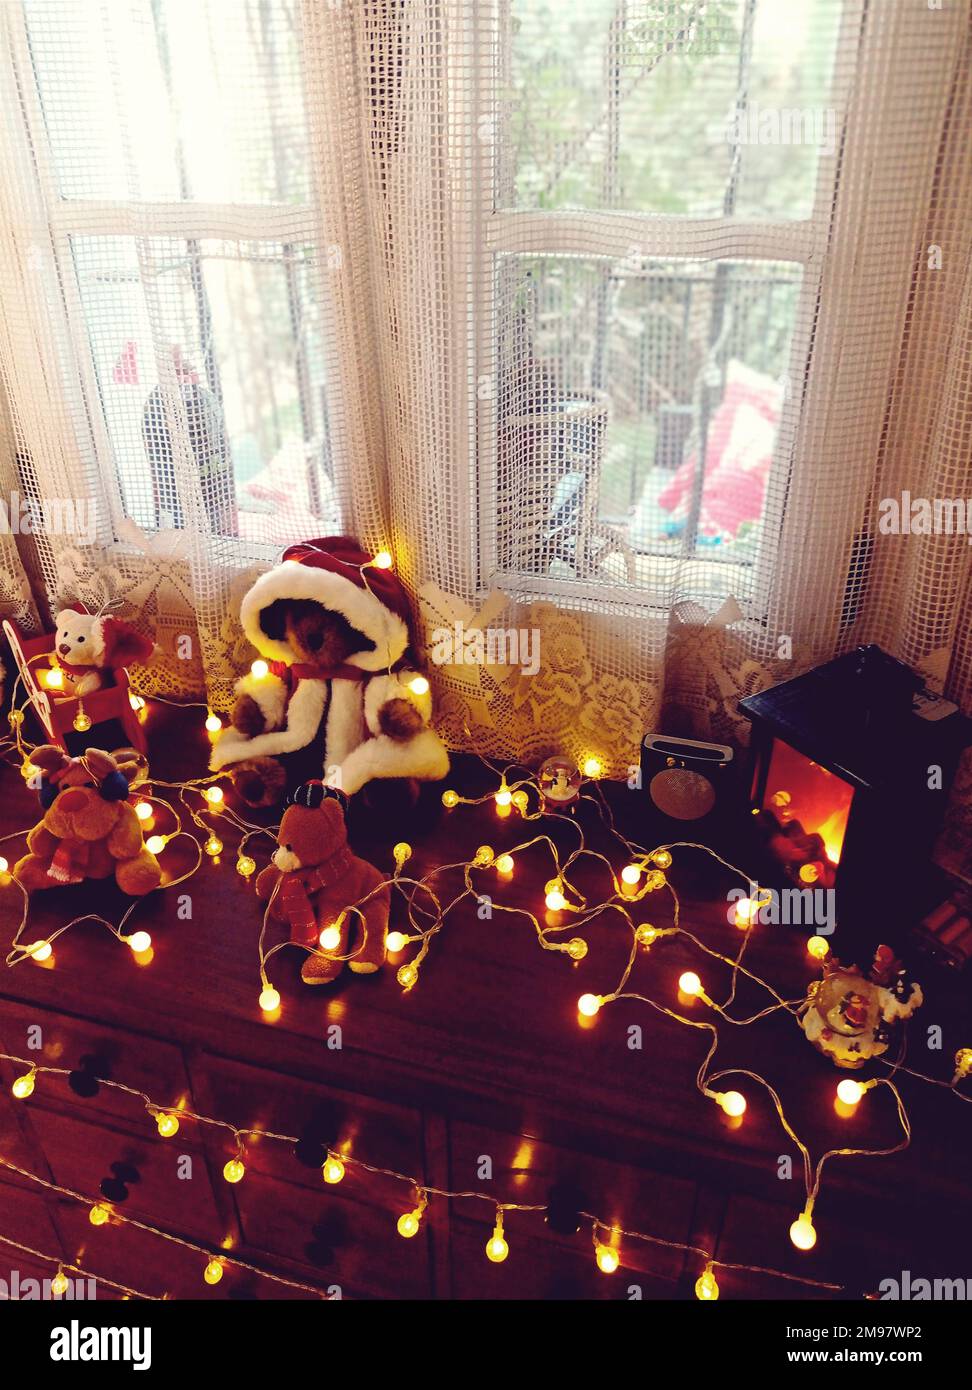 Gros plan de décorations de Noël assorties et de guirlandes lumineuses sur une commode à côté d'une fenêtre Banque D'Images